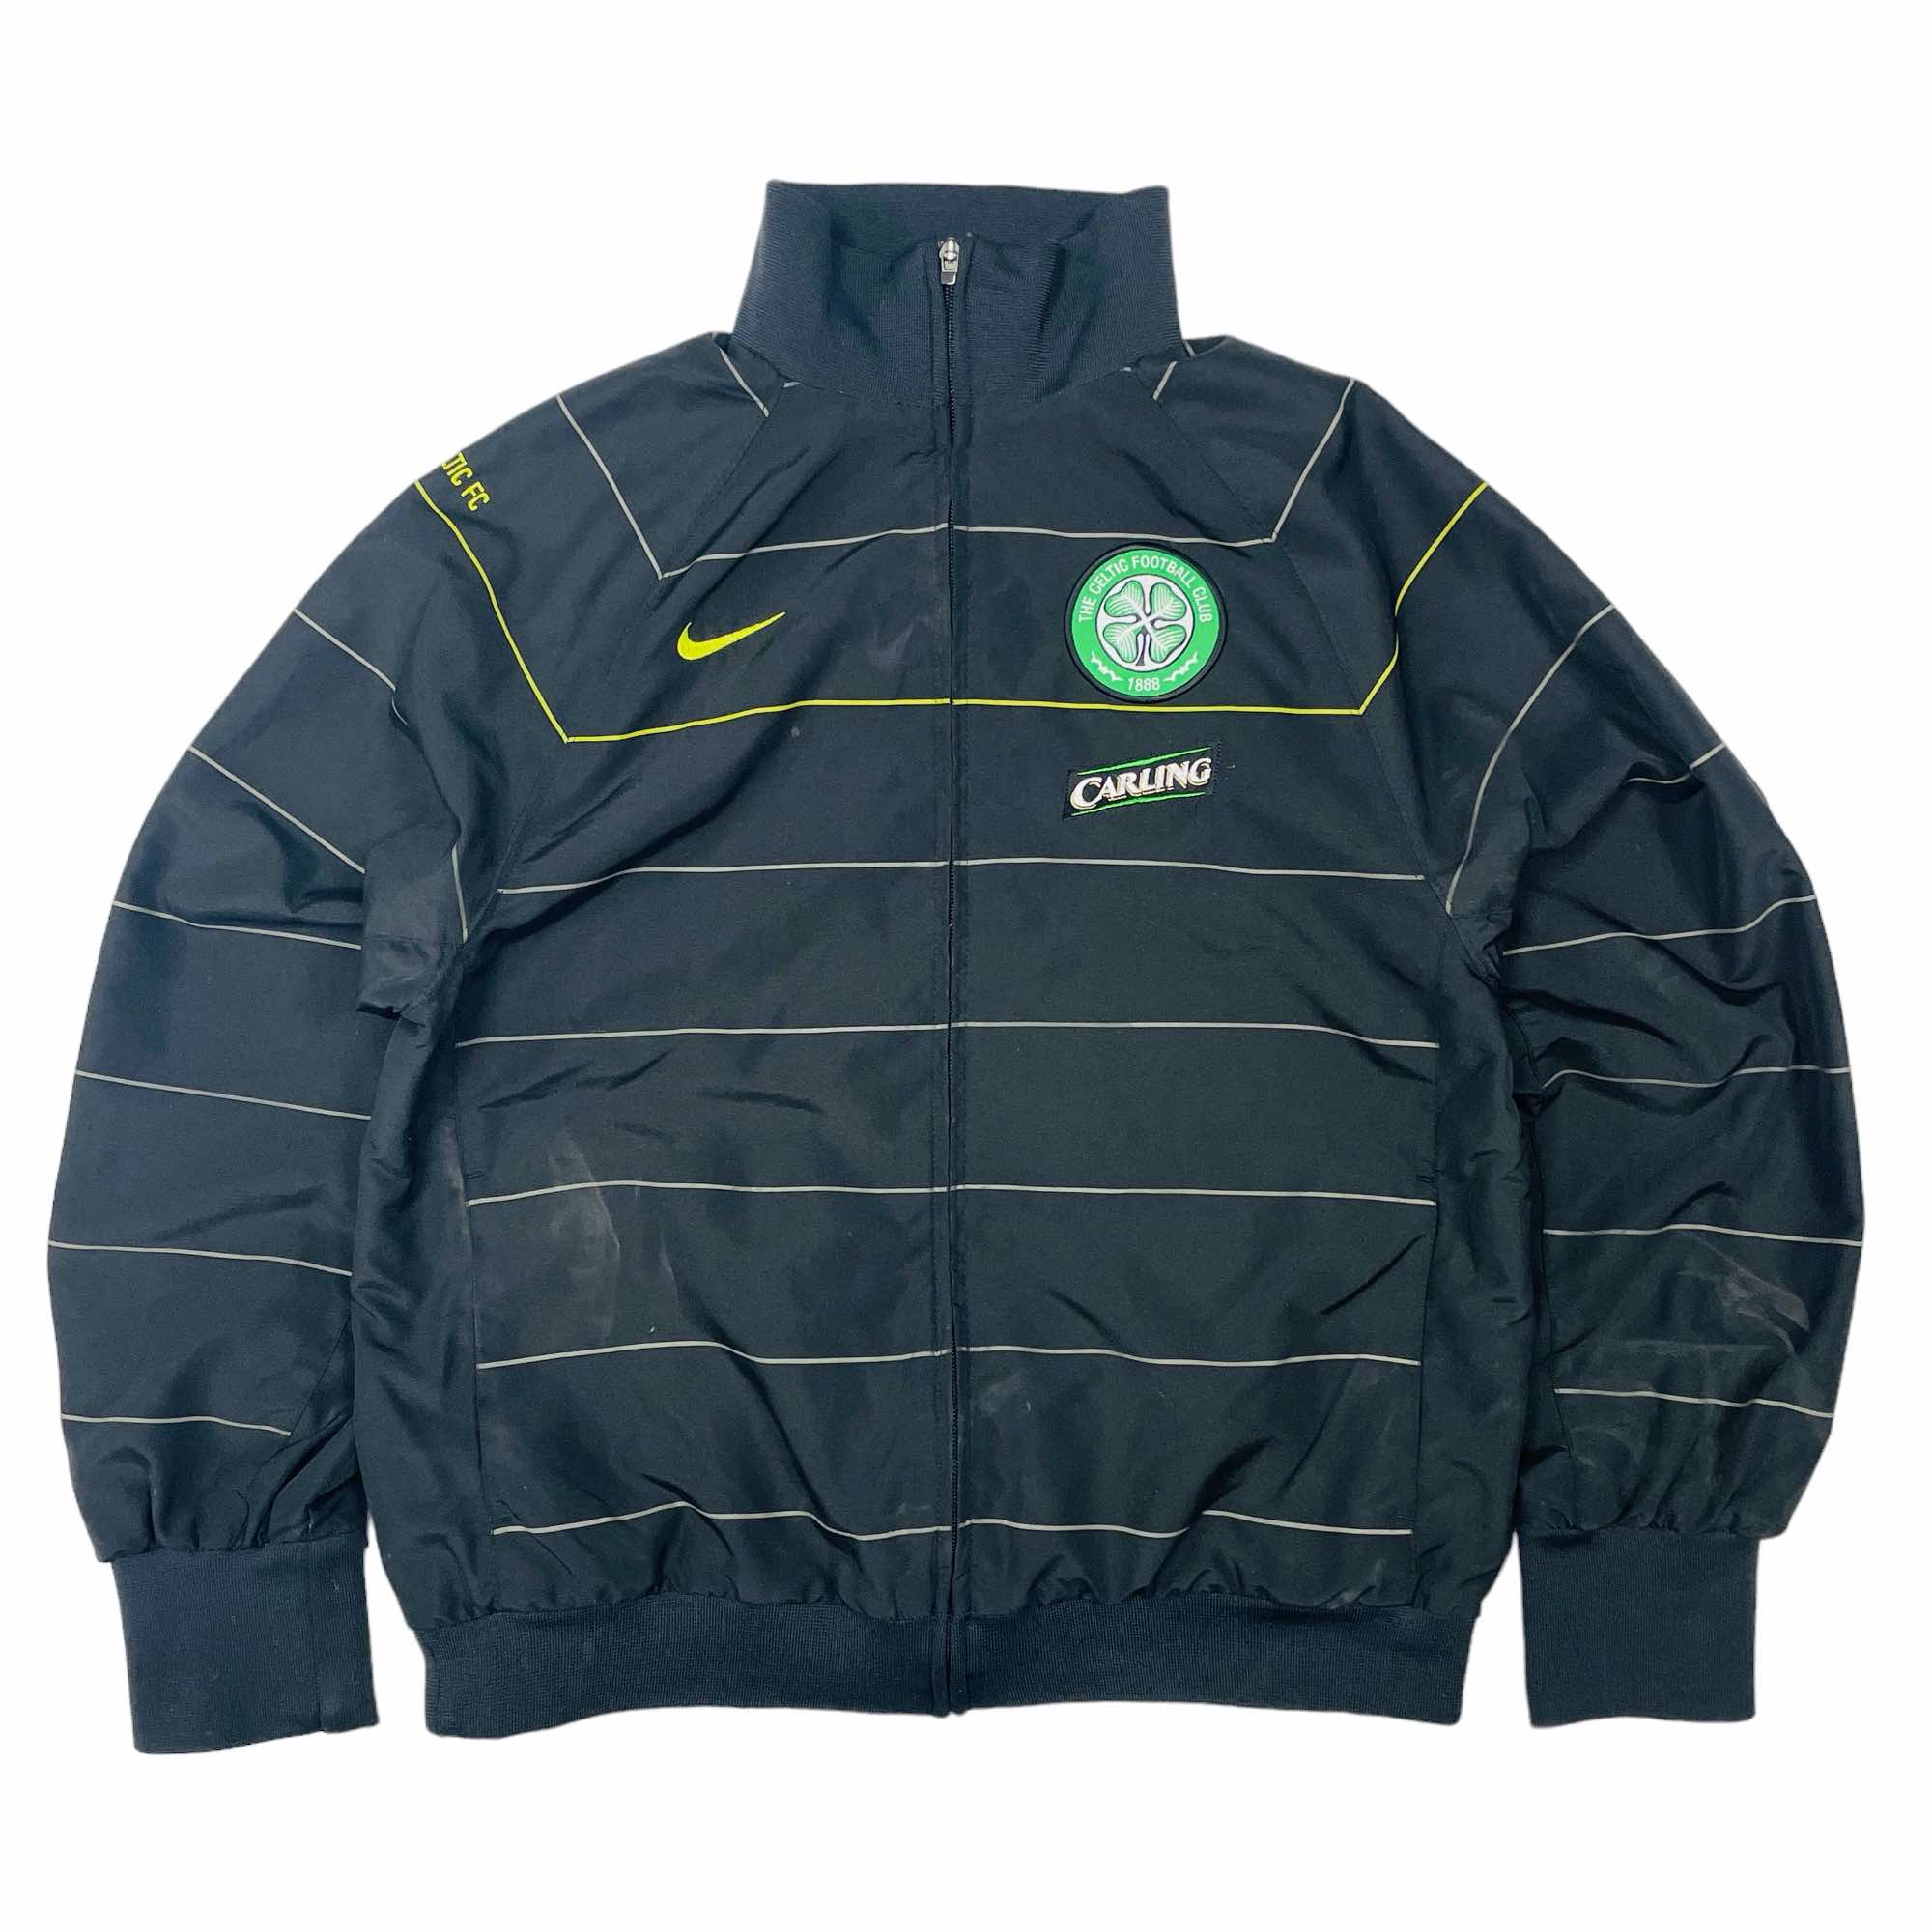 Celtic 2008/09 Nike Training Jacket - Medium